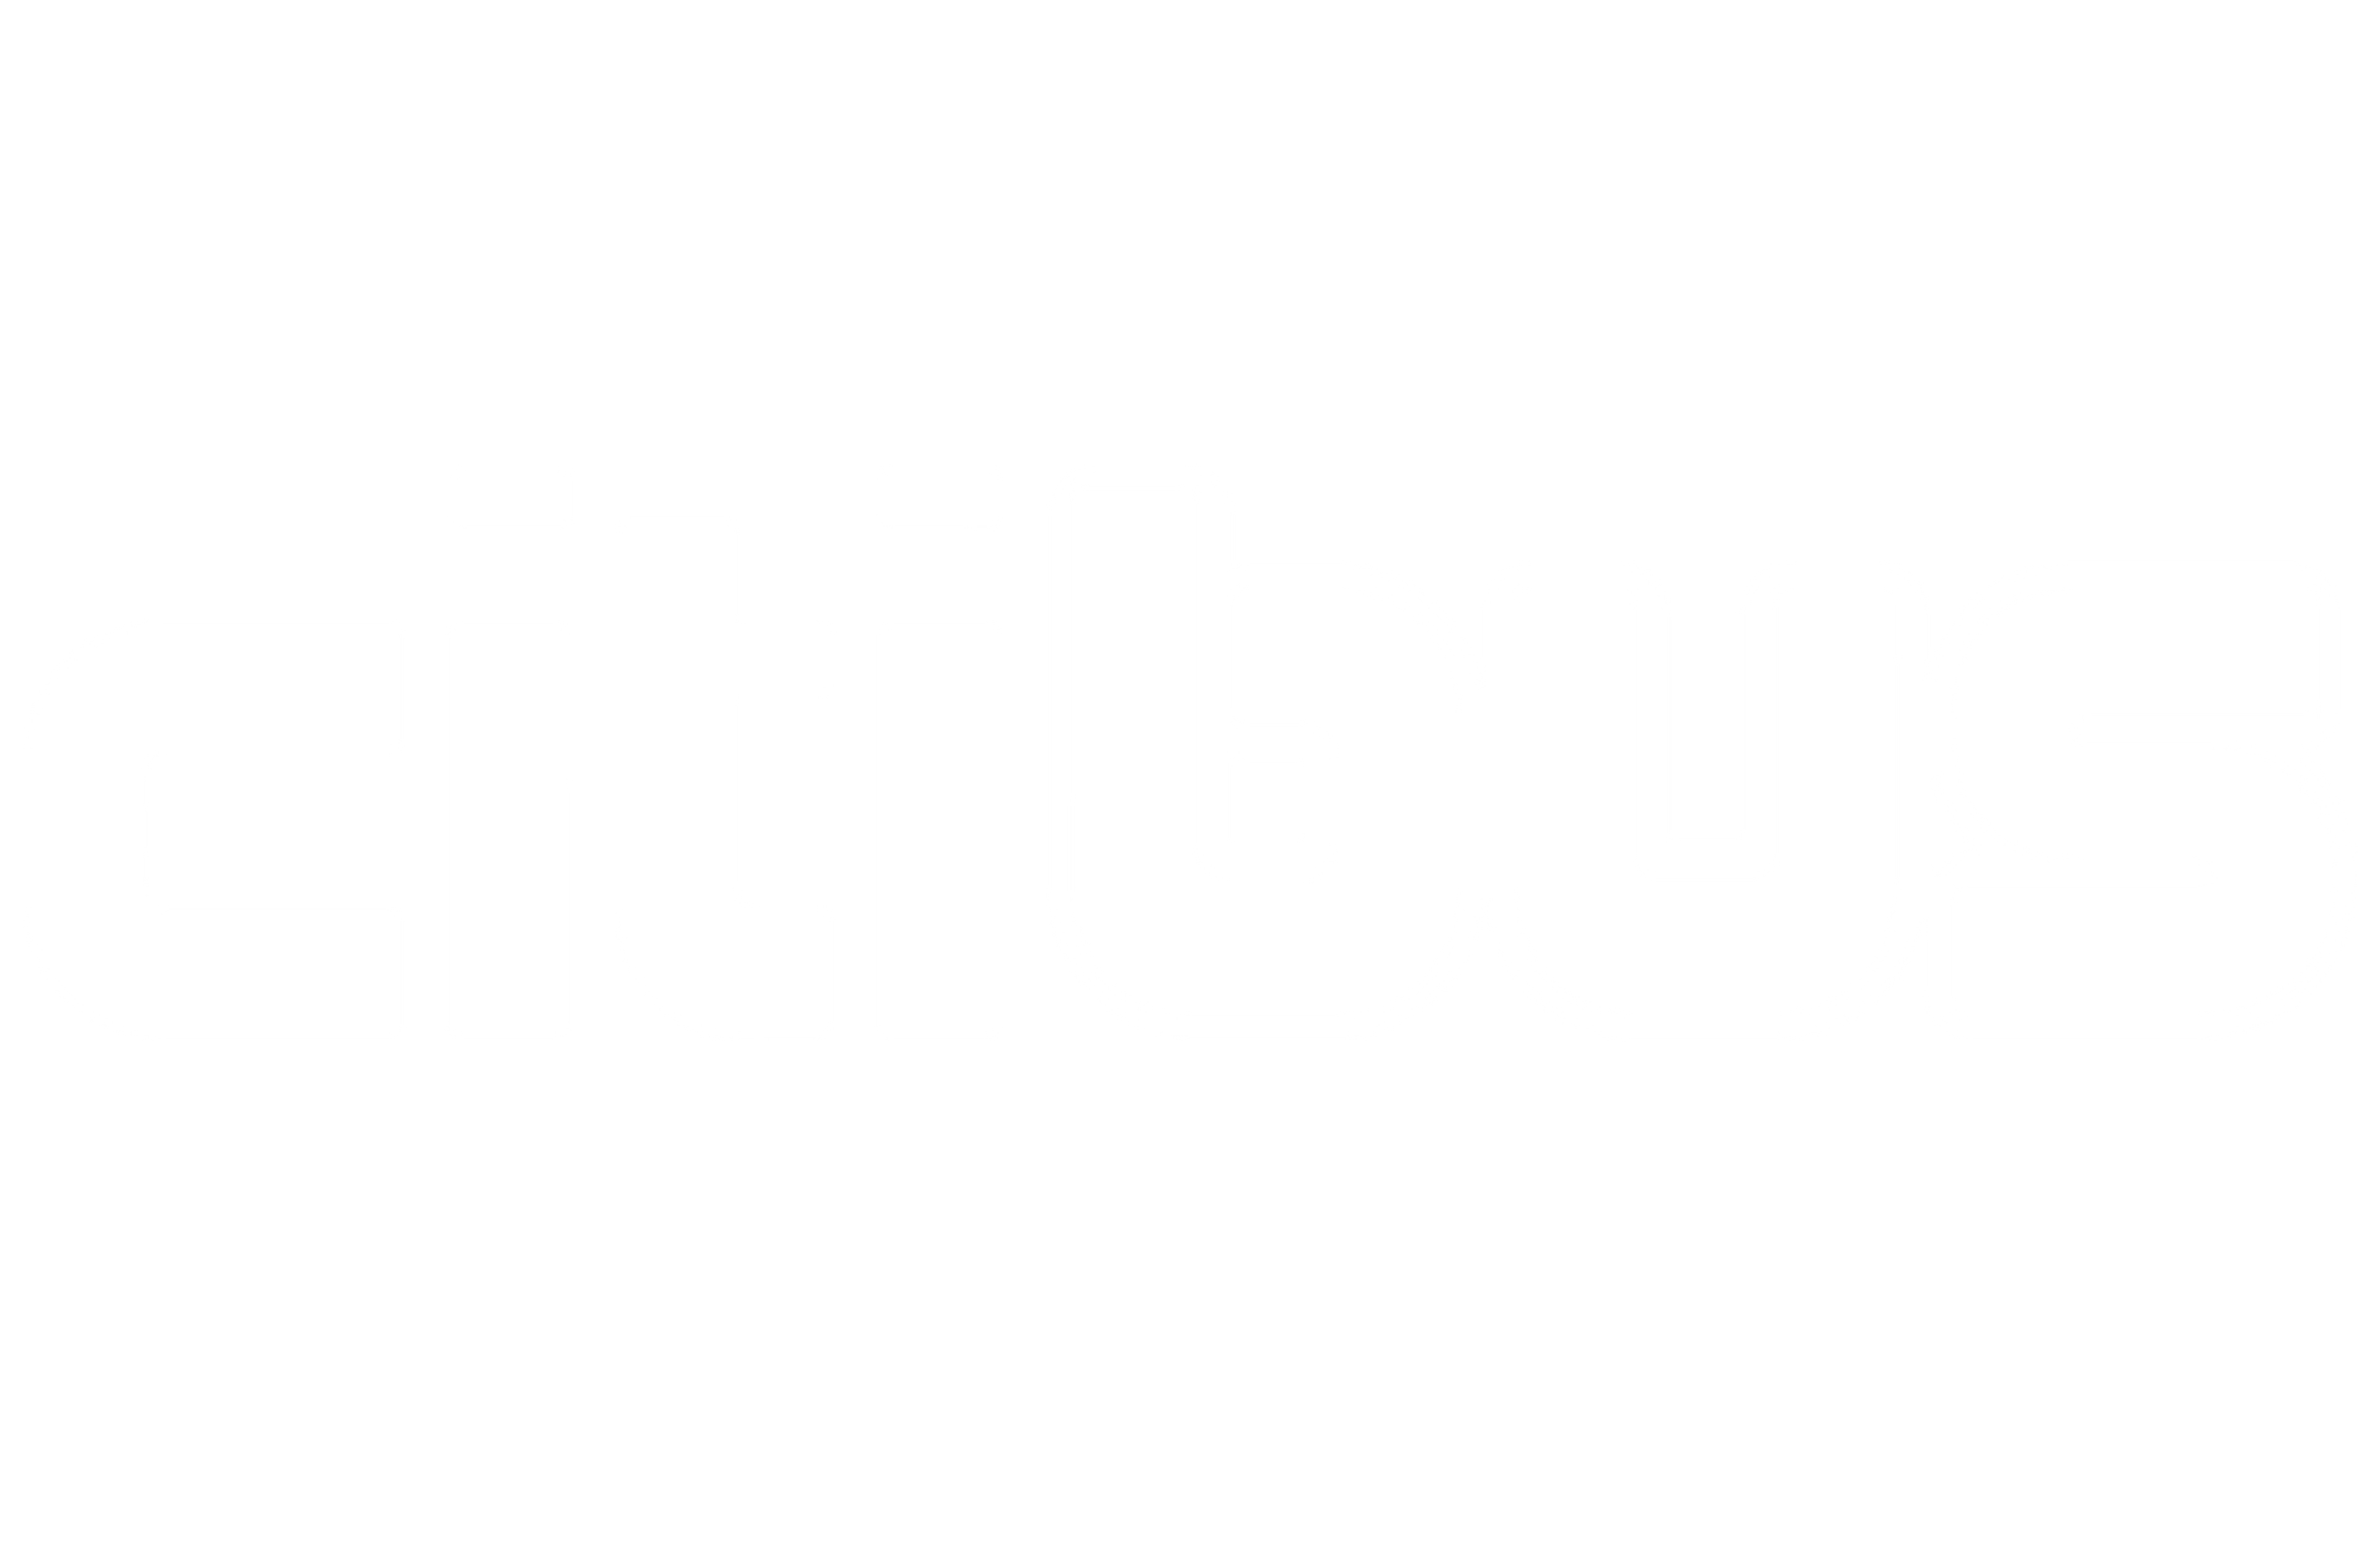 Citibus logo